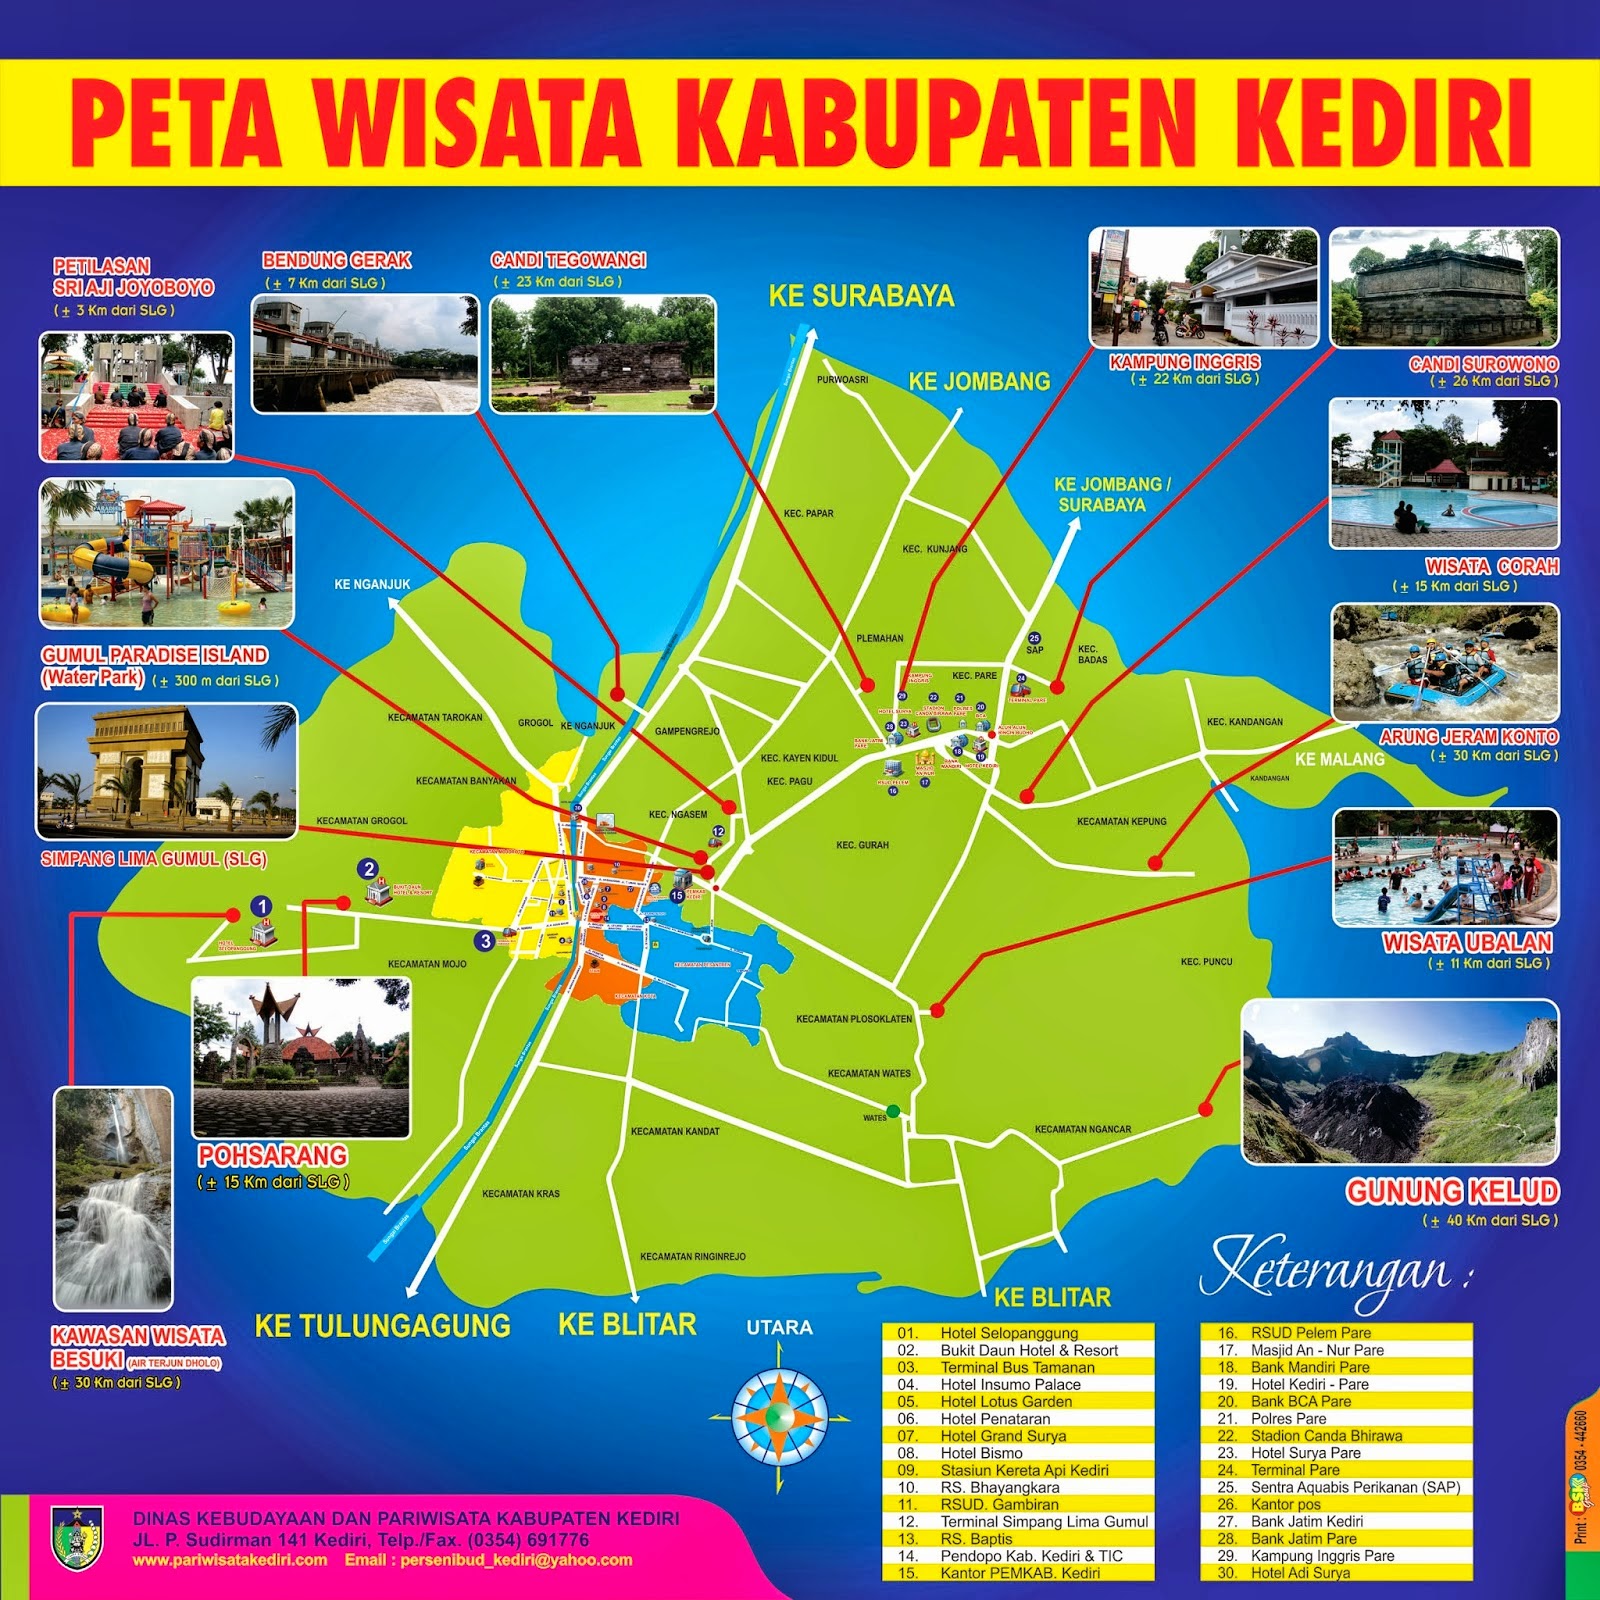 Jogja yakni salah satu kota urusan wisata dalam Indonesia yang banyak dikunjungi wisatawan aneh Berbatasan refleks dengan wilayah Jawa Pusat bagian daksina